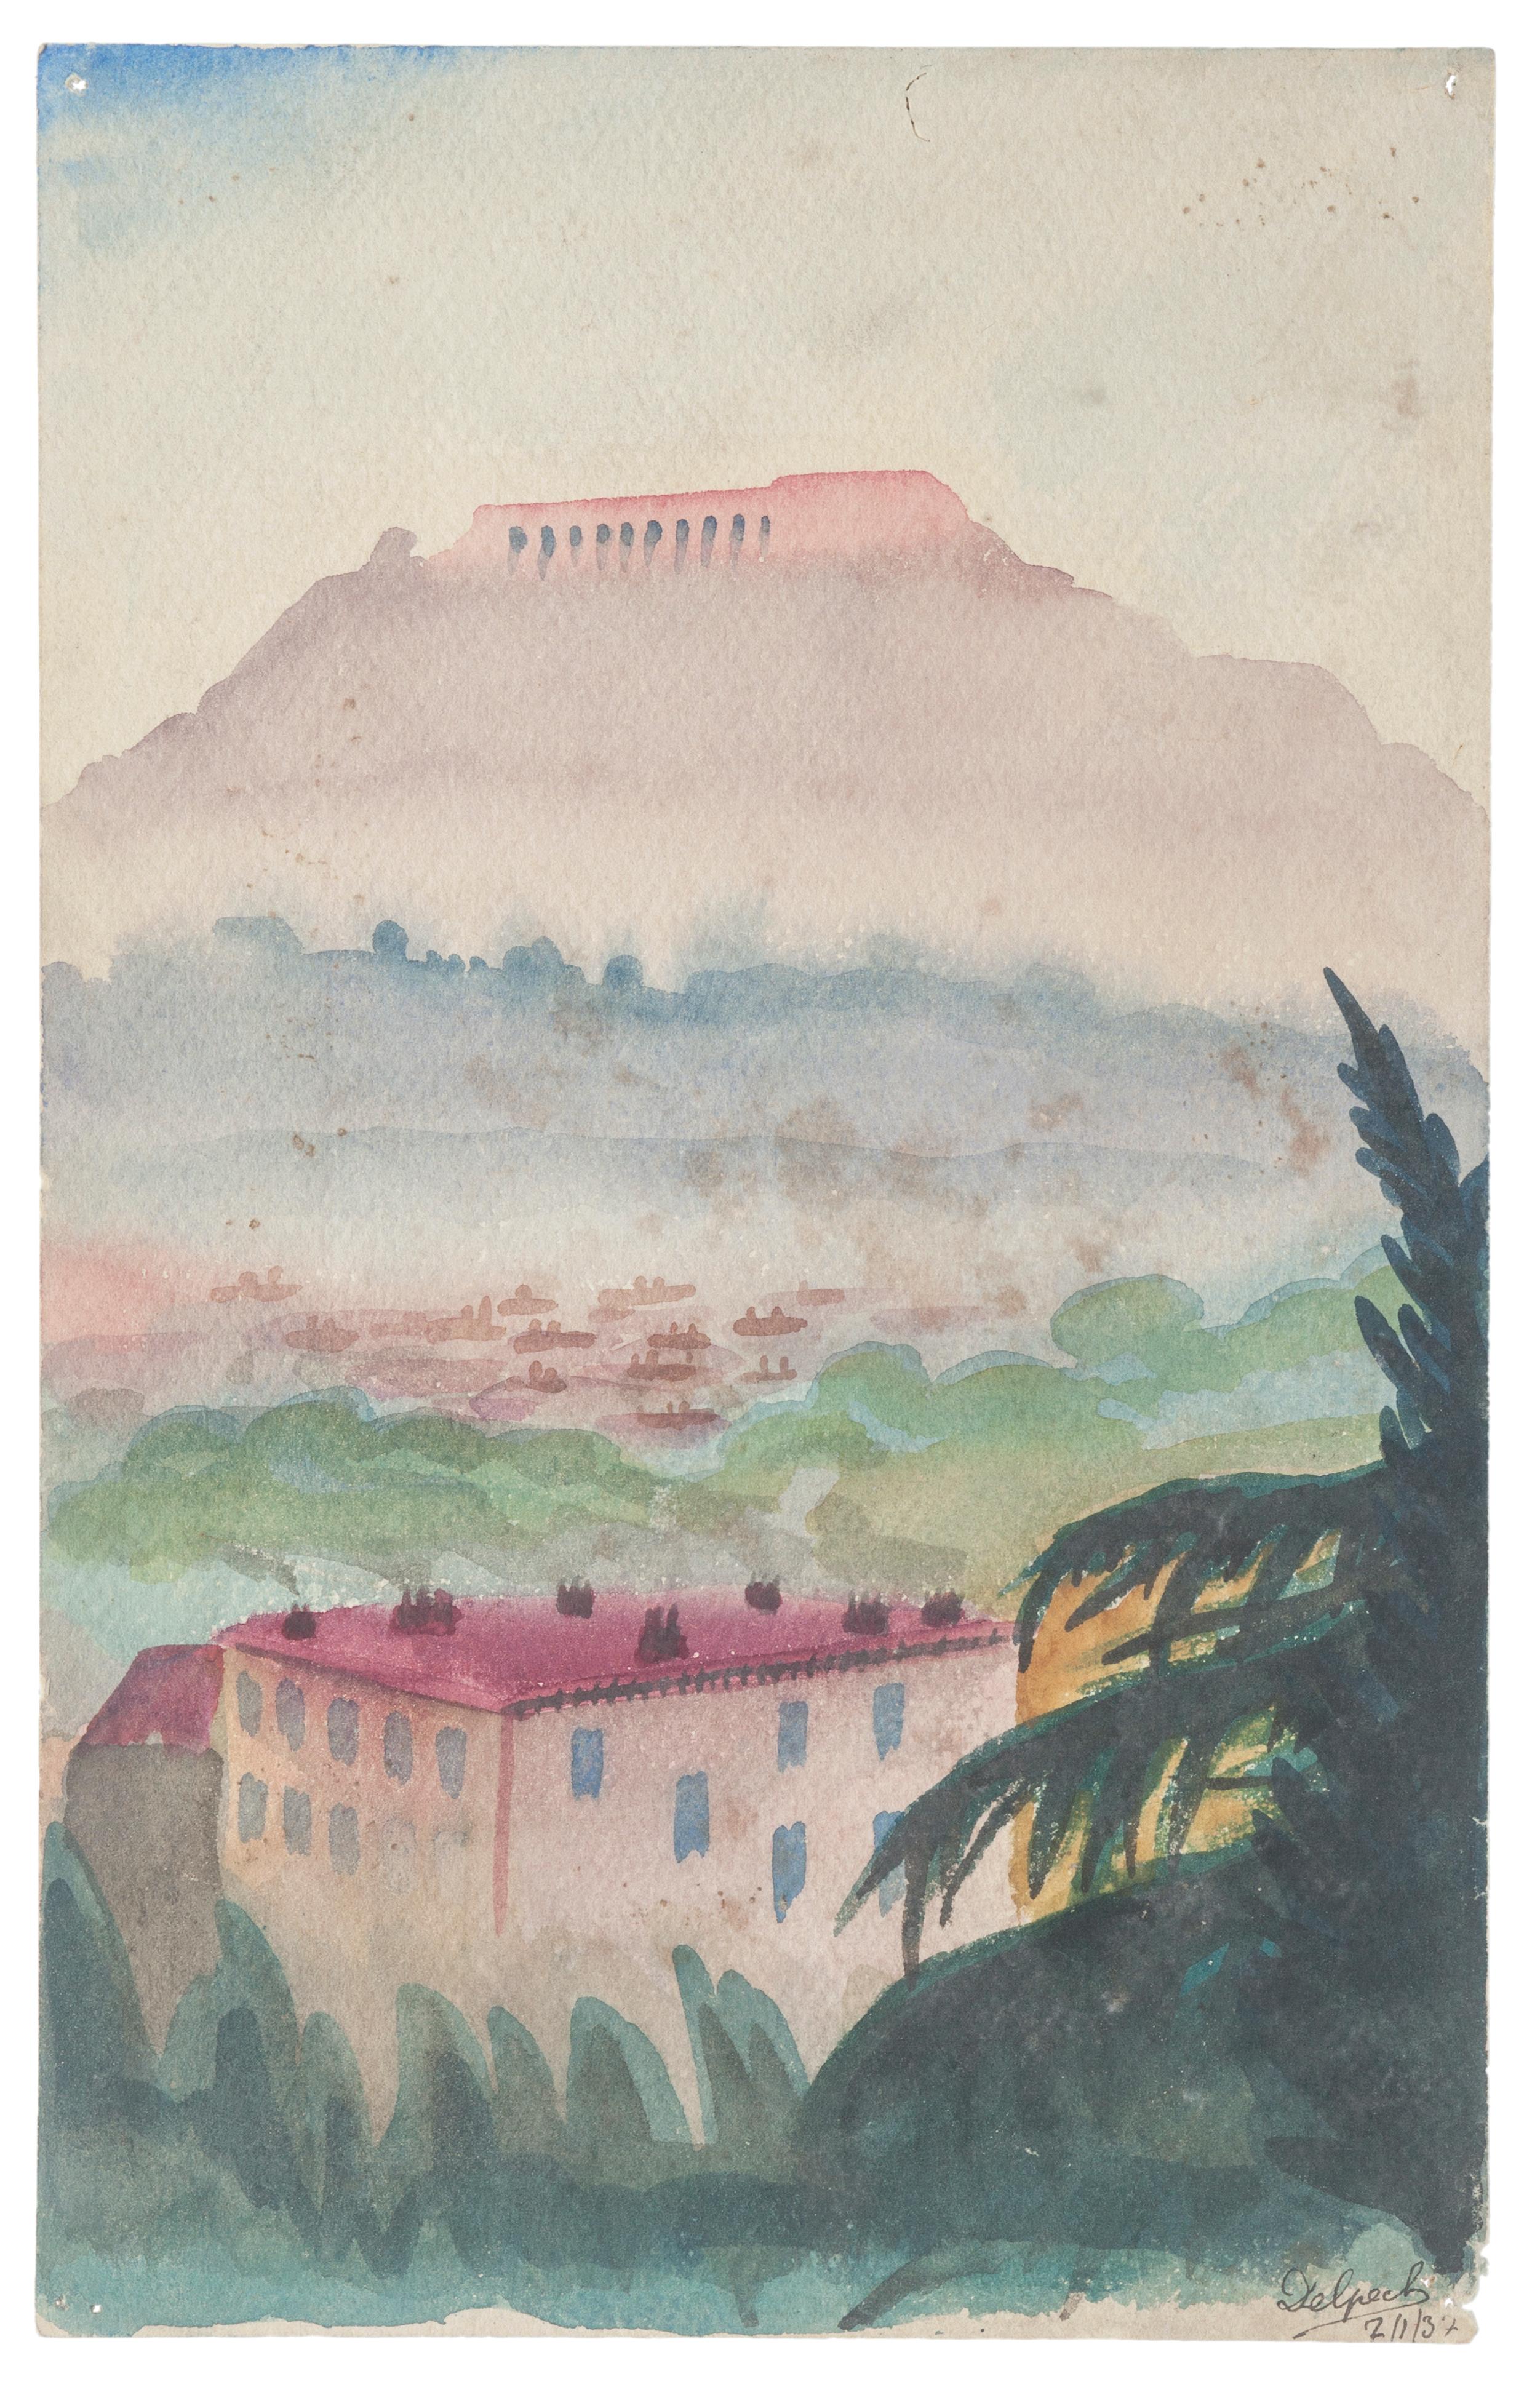 Athen: View of The Akropolis ist eine Zeichnung in Tempera und Aquarell auf Papier, die von Jean Delpech (1916-1988) realisiert wurde. 
Der Erhaltungszustand der Kunstwerke ist sehr gut.

Blattgröße: 23,5 x 15,3 cm.

Das Kunstwerk stellt eine